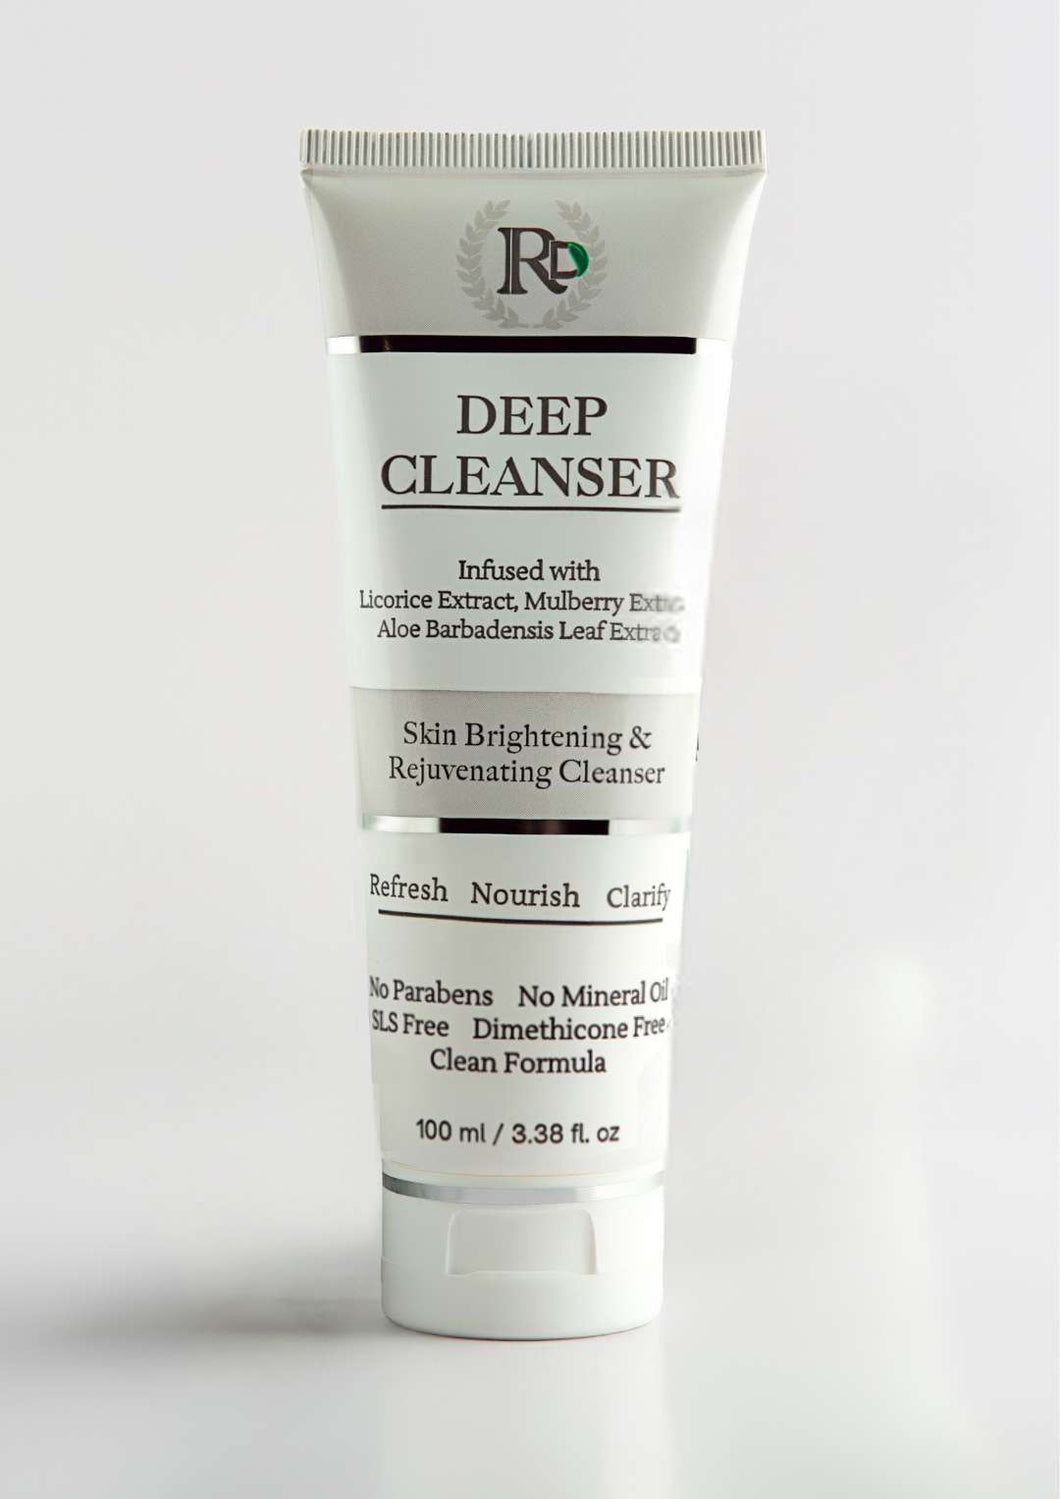 RD Deep Cleanser facewash (100ml)